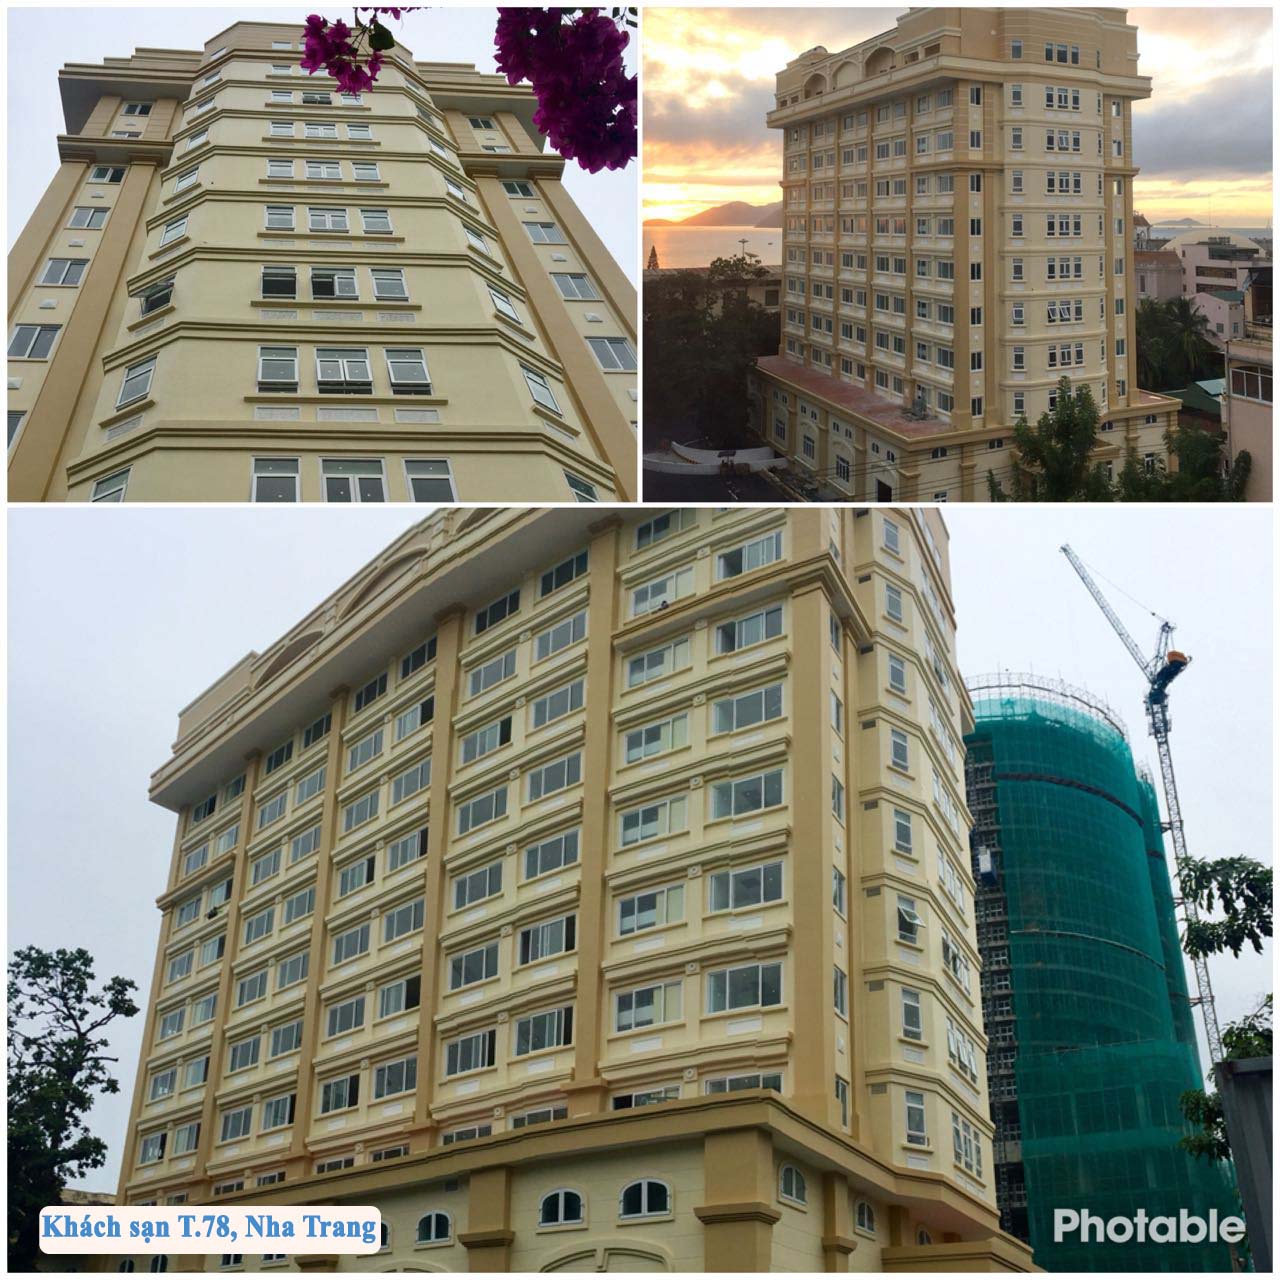 Khách sạn T.78, Nha Trang